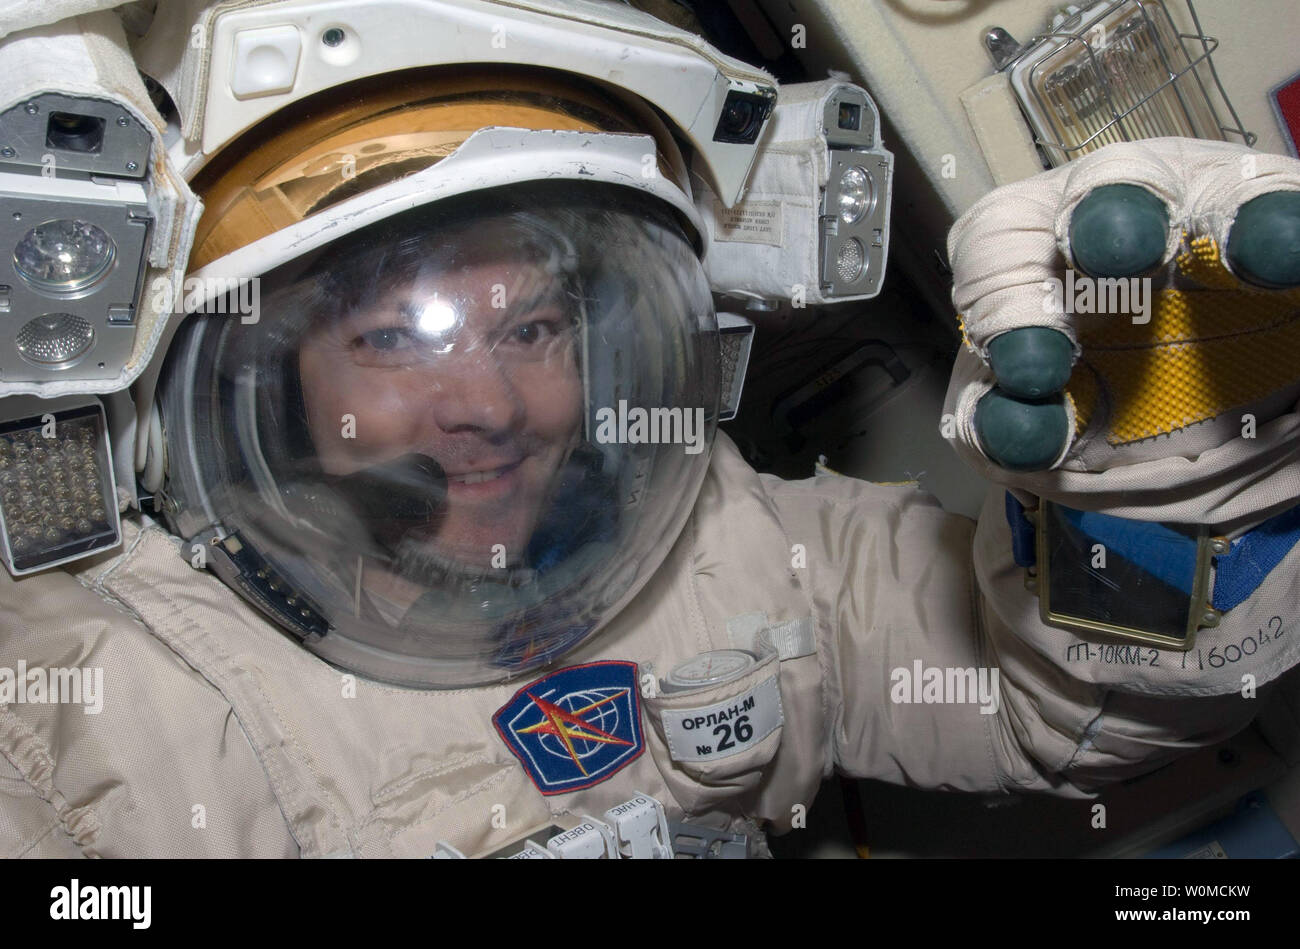 'Agenzia Spaziale Federale Russa cosmonauta Oleg Kononenko, Expedition 17 tecnico di volo, vestito con la sua federazione Orlan tuta spaziale, partecipa a una completa Prove abito spacewalk su luglio 8 in corrispondenza della stazione spaziale internazionale. Durante le 6 ore, 18-minute spacewalk, hanno ispezionato la loro Soyuz TMA-12 veicolo spaziale ed è stato recuperato un pyro vite da esso. (UPI foto/NASA) Foto Stock